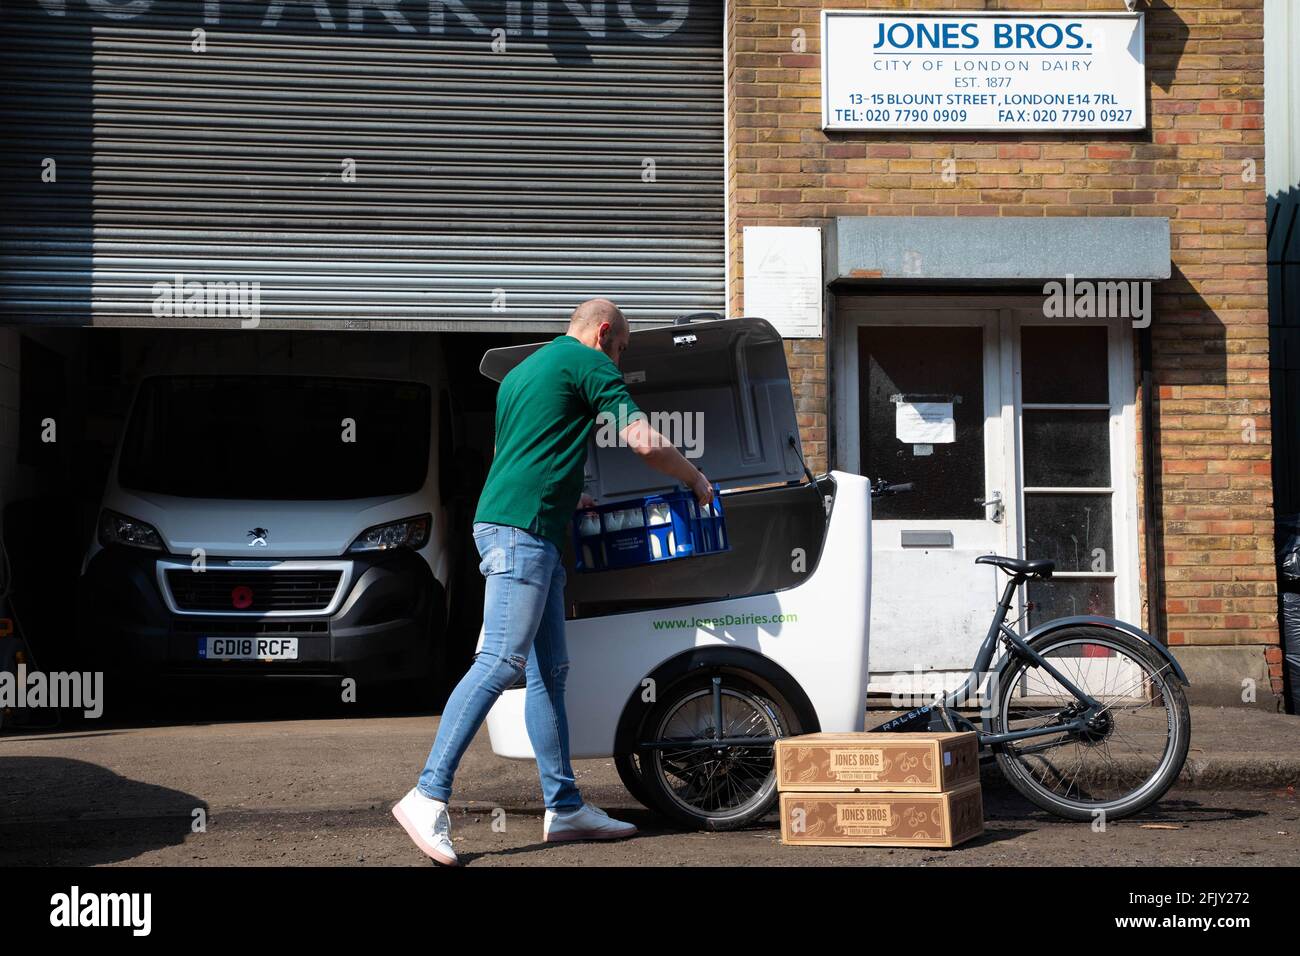 REDAKTIONELLE VERWENDUNG NUR Henry Jones von Jones Bros Dairy lädt Milch in  ein E-Cargo-Fahrrad von Raleigh, da die Molkerei die Rückgabe des Fahrrads  auf ihrer täglichen 10-Meilen-Lieferroute in London ankündigt, um die